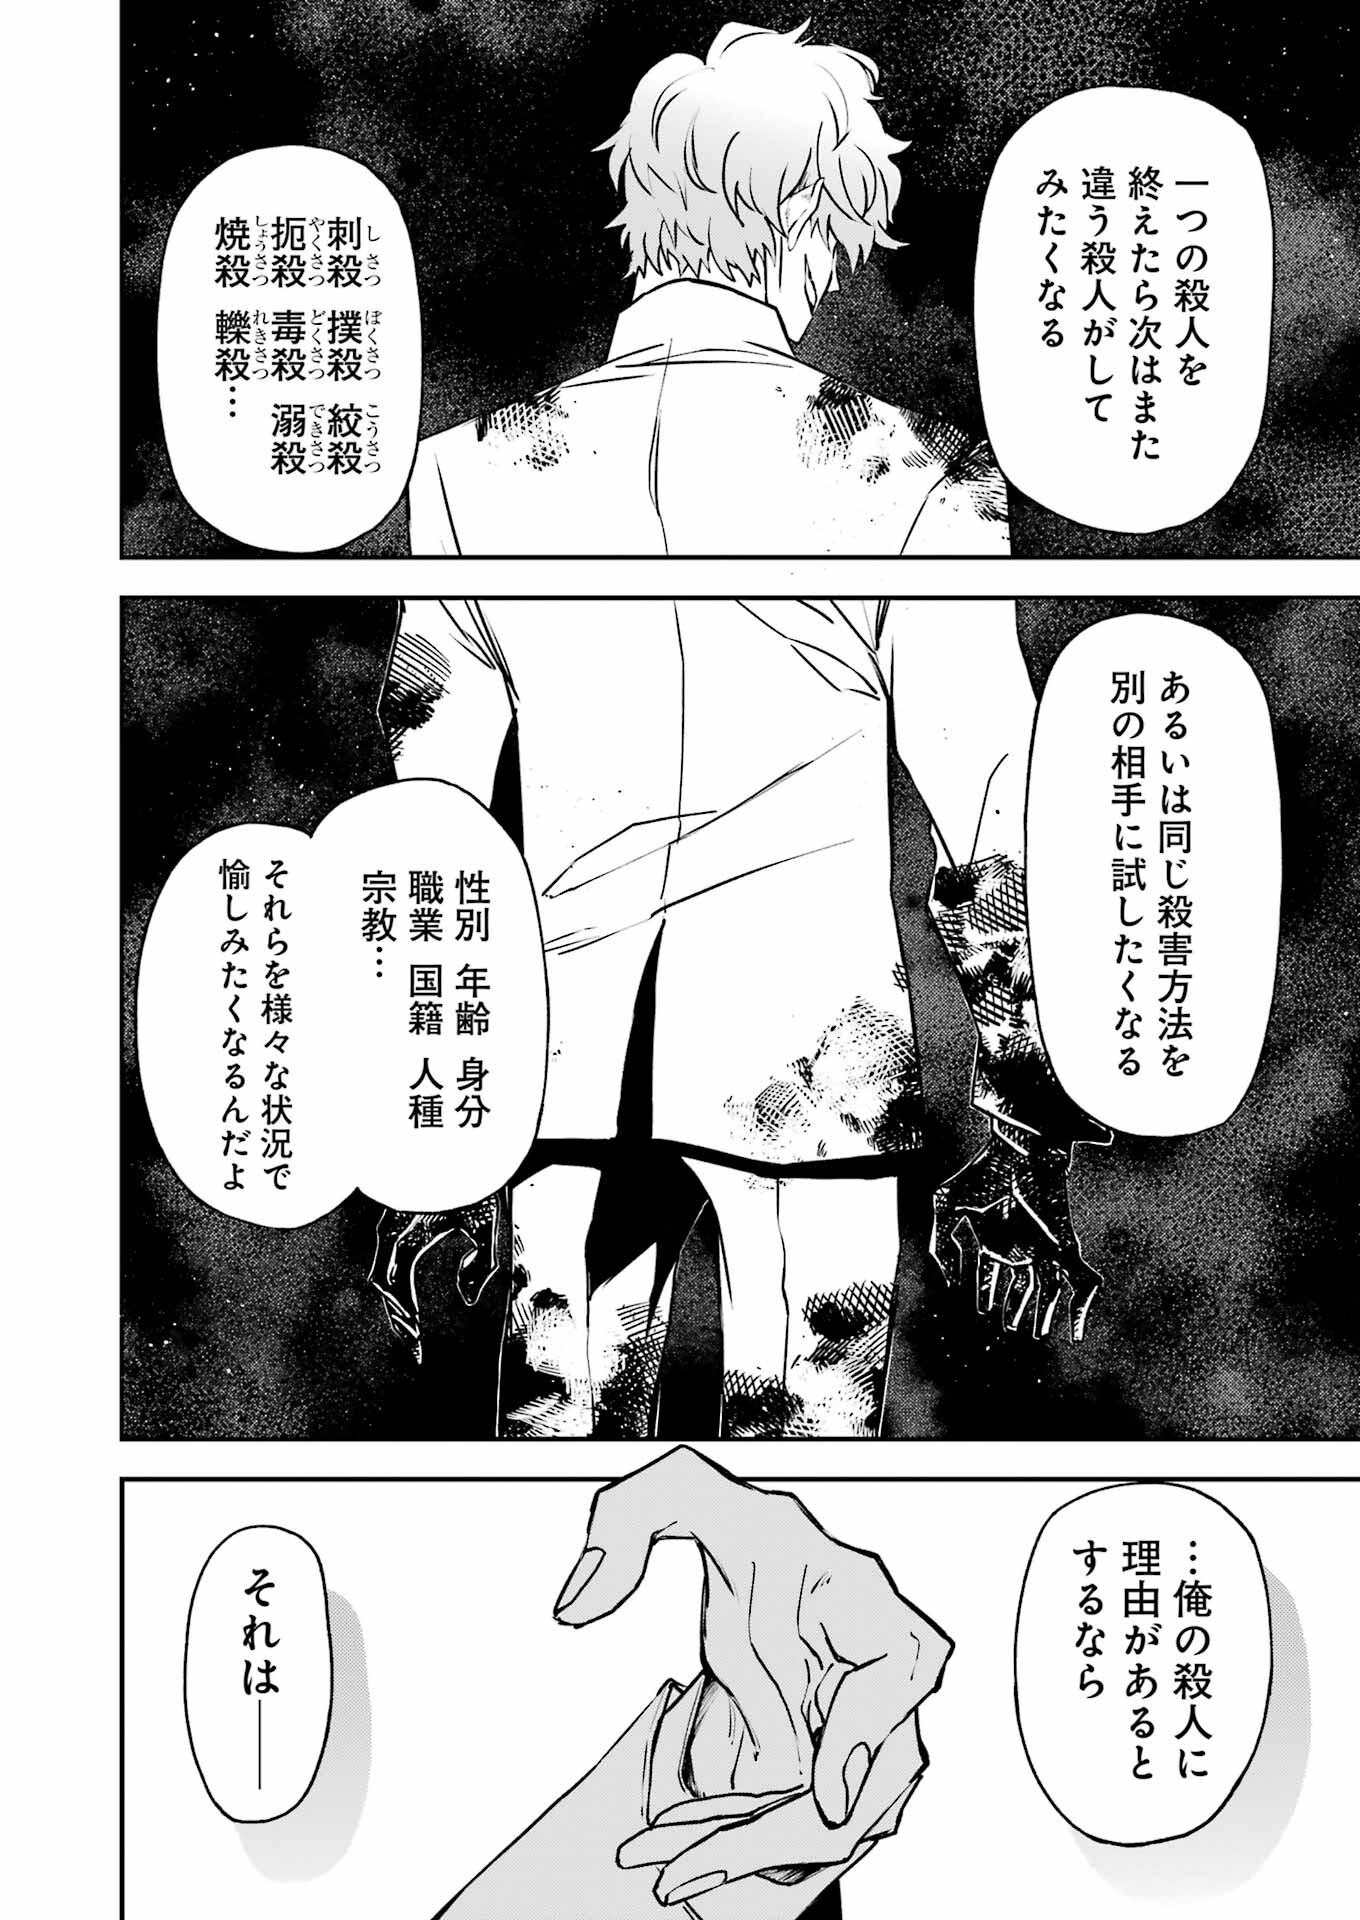 マーダーロック-殺人鬼の凶室-; Mādārokku – satsujinki no kyō-shitsu -; Murder Rock-The Murderer’s Chamber- 第32話 - Page 14